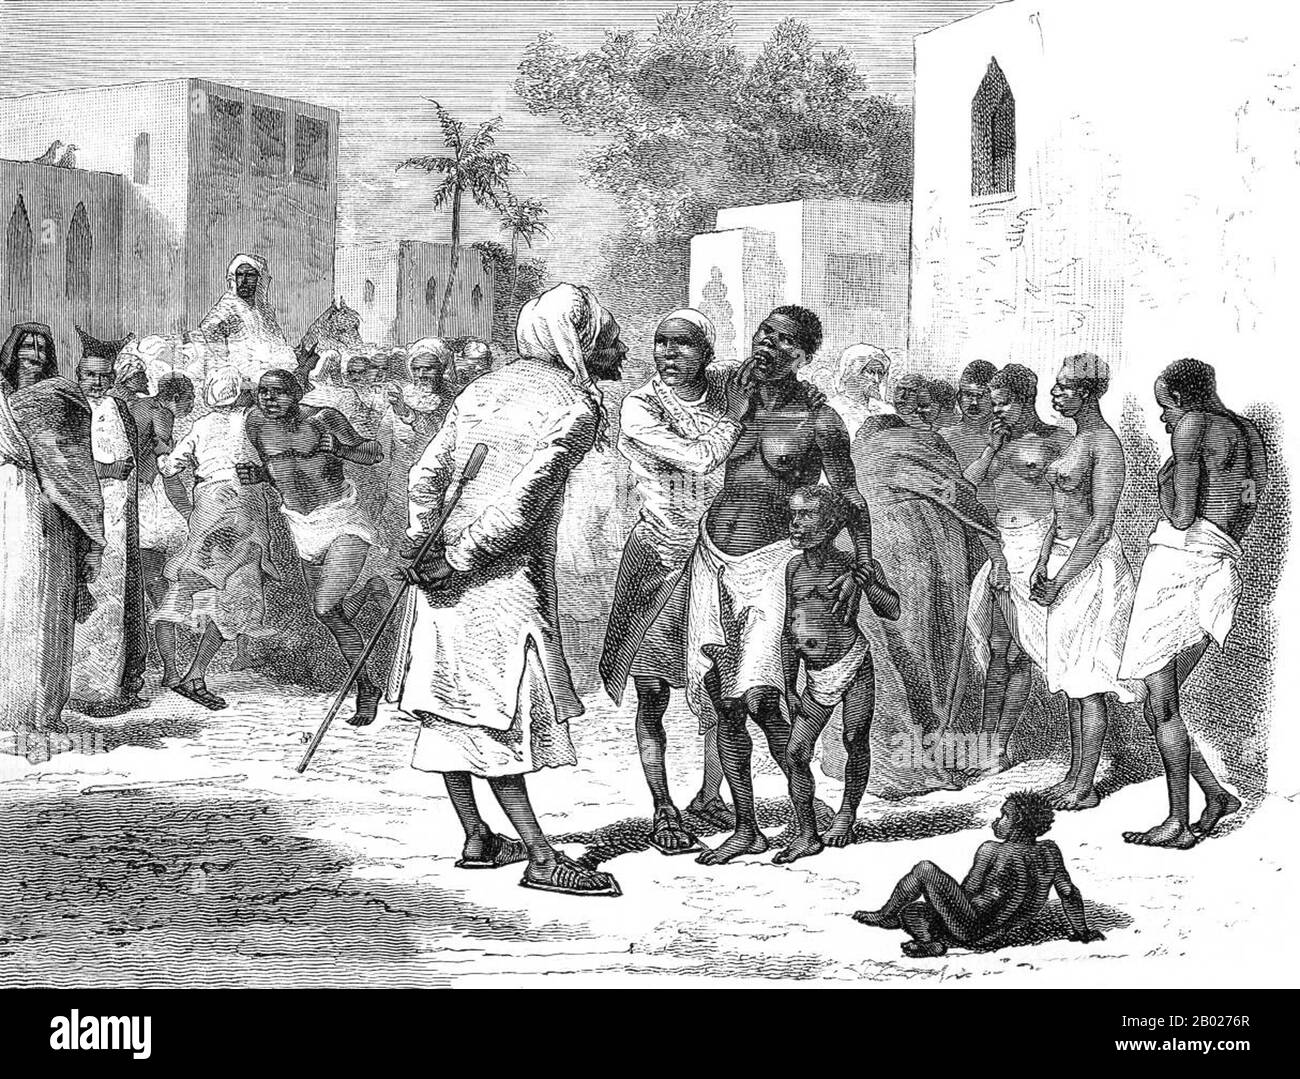 En 1698, Zanzibar est tombé sous le contrôle du Sultanat d'Oman. Jusqu'aux alentours de 1890, les sultans de Zanzibar contrôlaient une partie importante de la côte est-africaine, connue sous le nom de Zanj, qui comprenait Mombasa, Dar es Salaam, et des routes commerciales s'étendant beaucoup plus loin dans les terres, comme la route menant à Kindu sur la rivière Congo. Les sultans ont développé une économie de commerce et de cultures de trésorerie dans l'archipel de Zanzibar avec une élite arabe au pouvoir. L'Ivoire était un bien commercial majeur. L'archipel, également connu sous le nom d'îles Spice, était célèbre dans le monde entier pour ses clous de girofle et autres épices, et les plantations étaient deve Banque D'Images